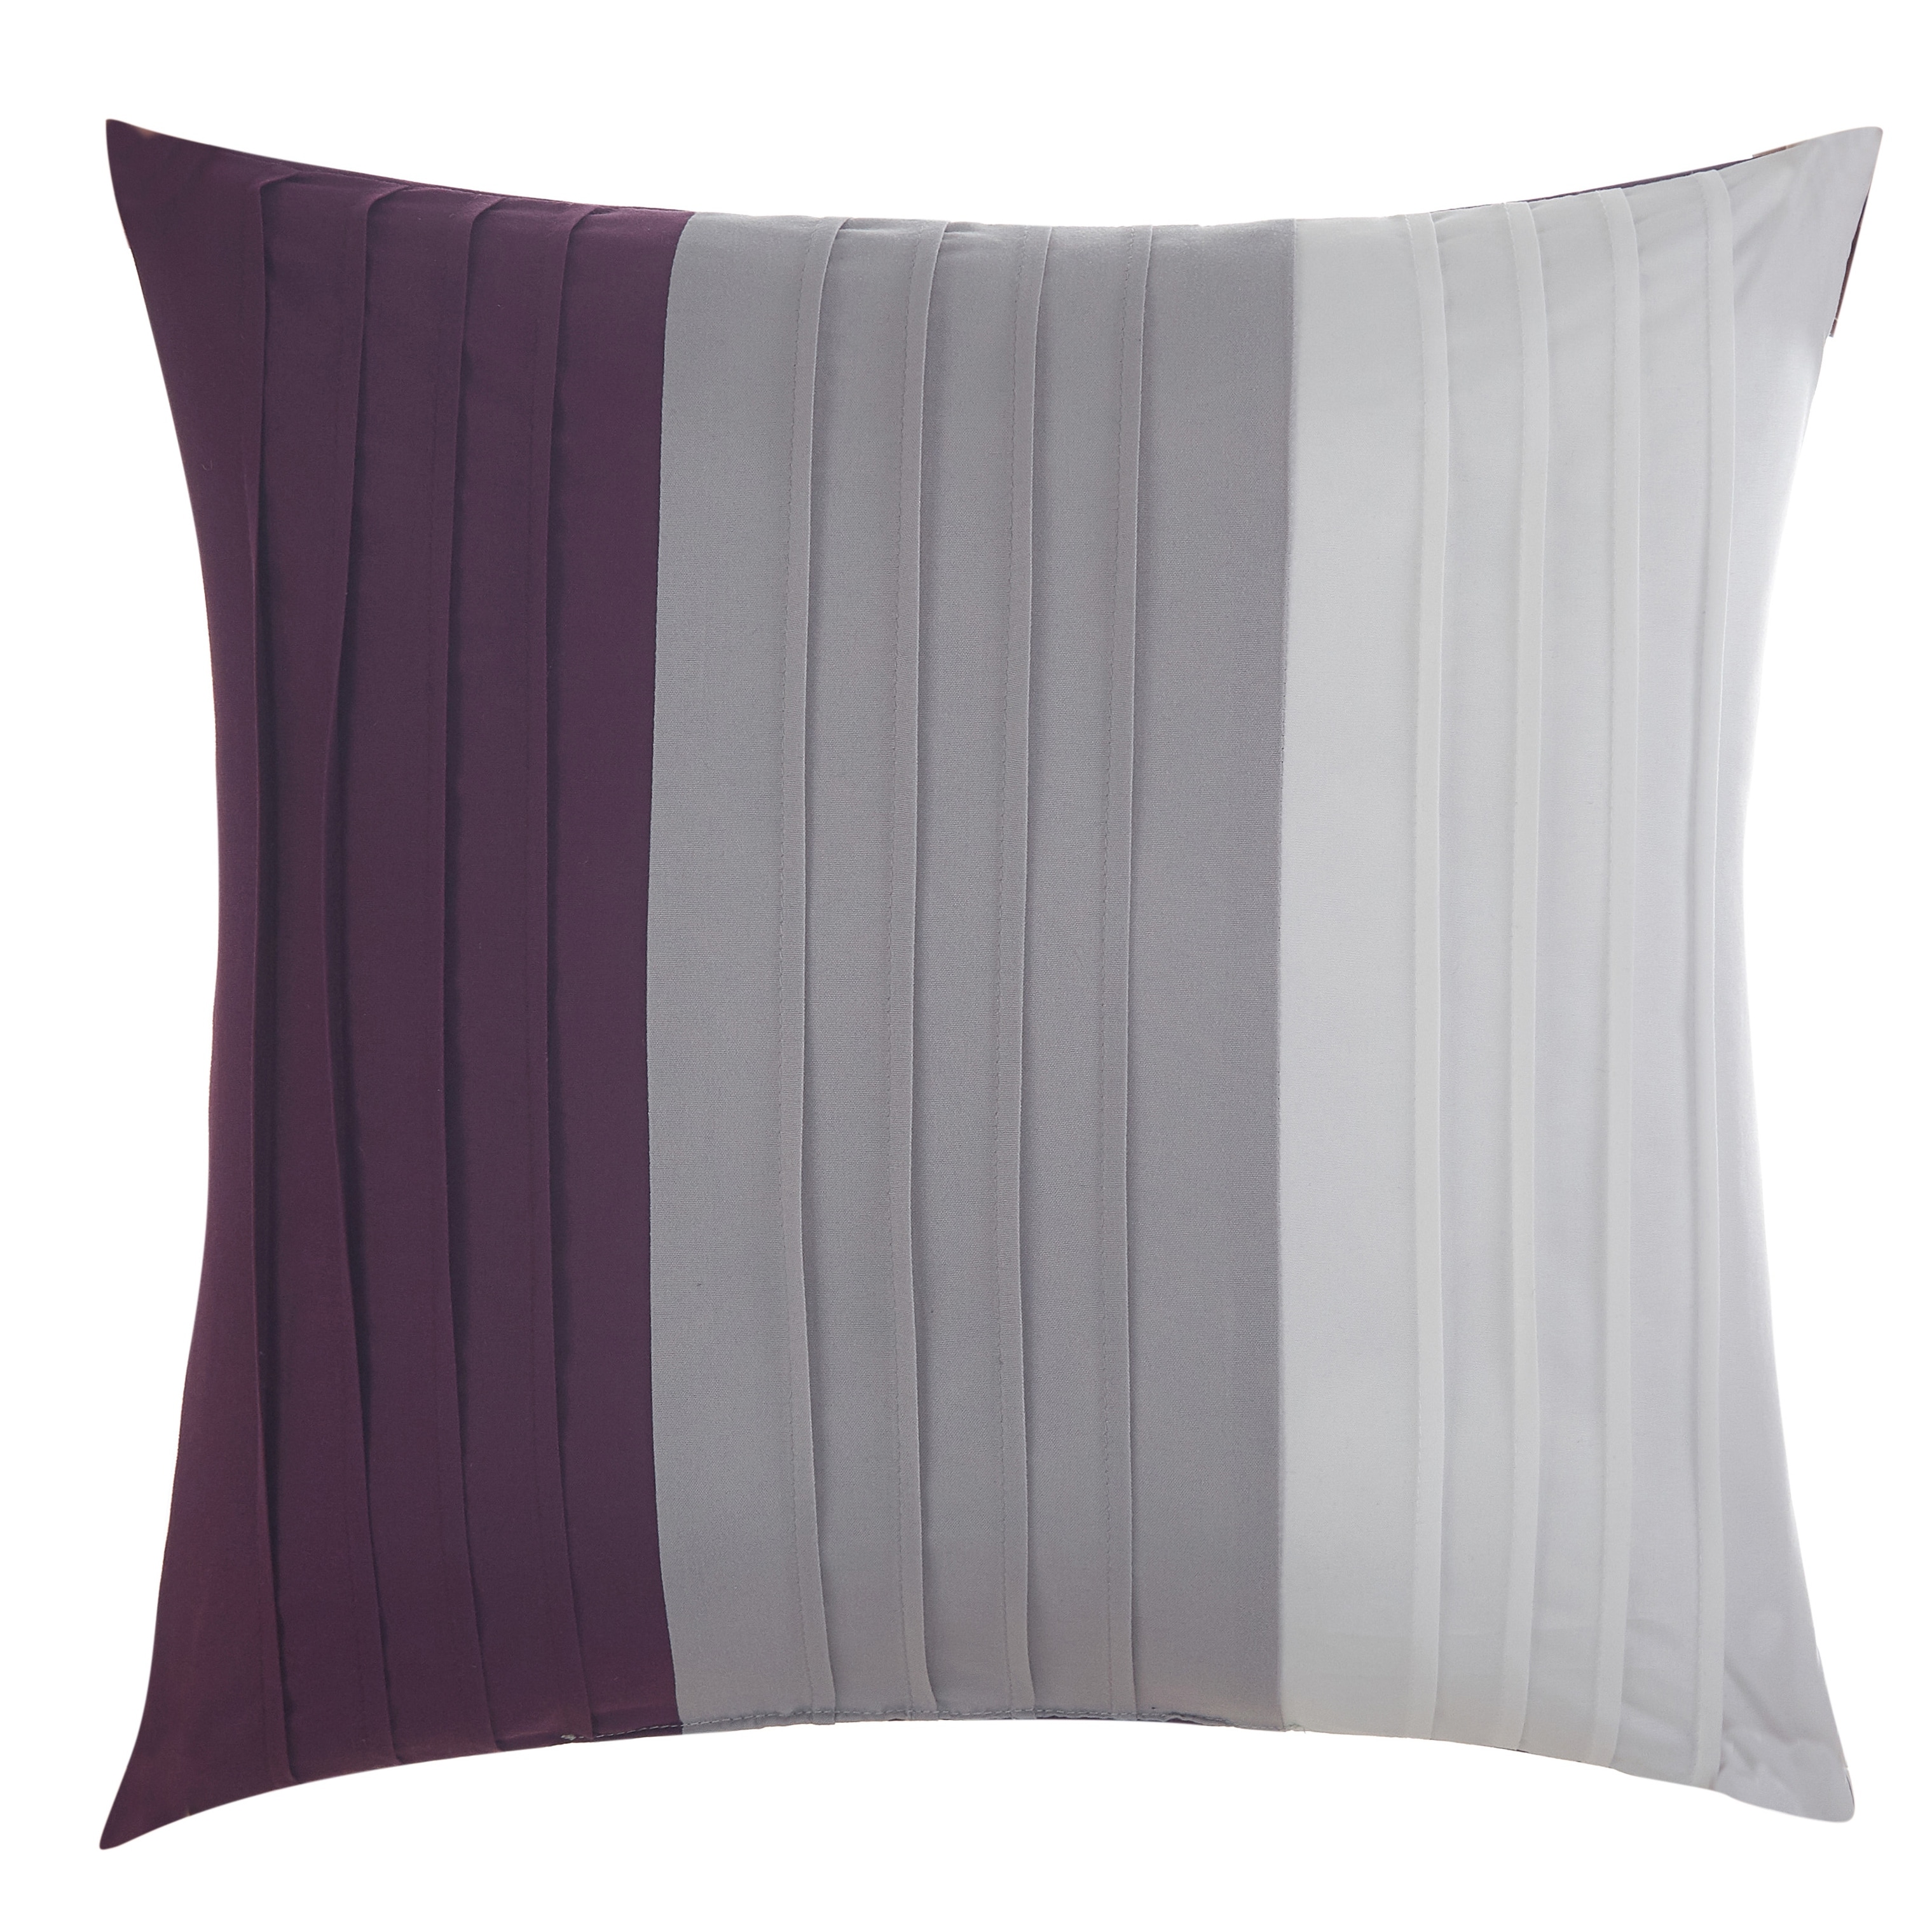 Grand Avenue Ciaran 7-Piece Purple Floral Comforter Set